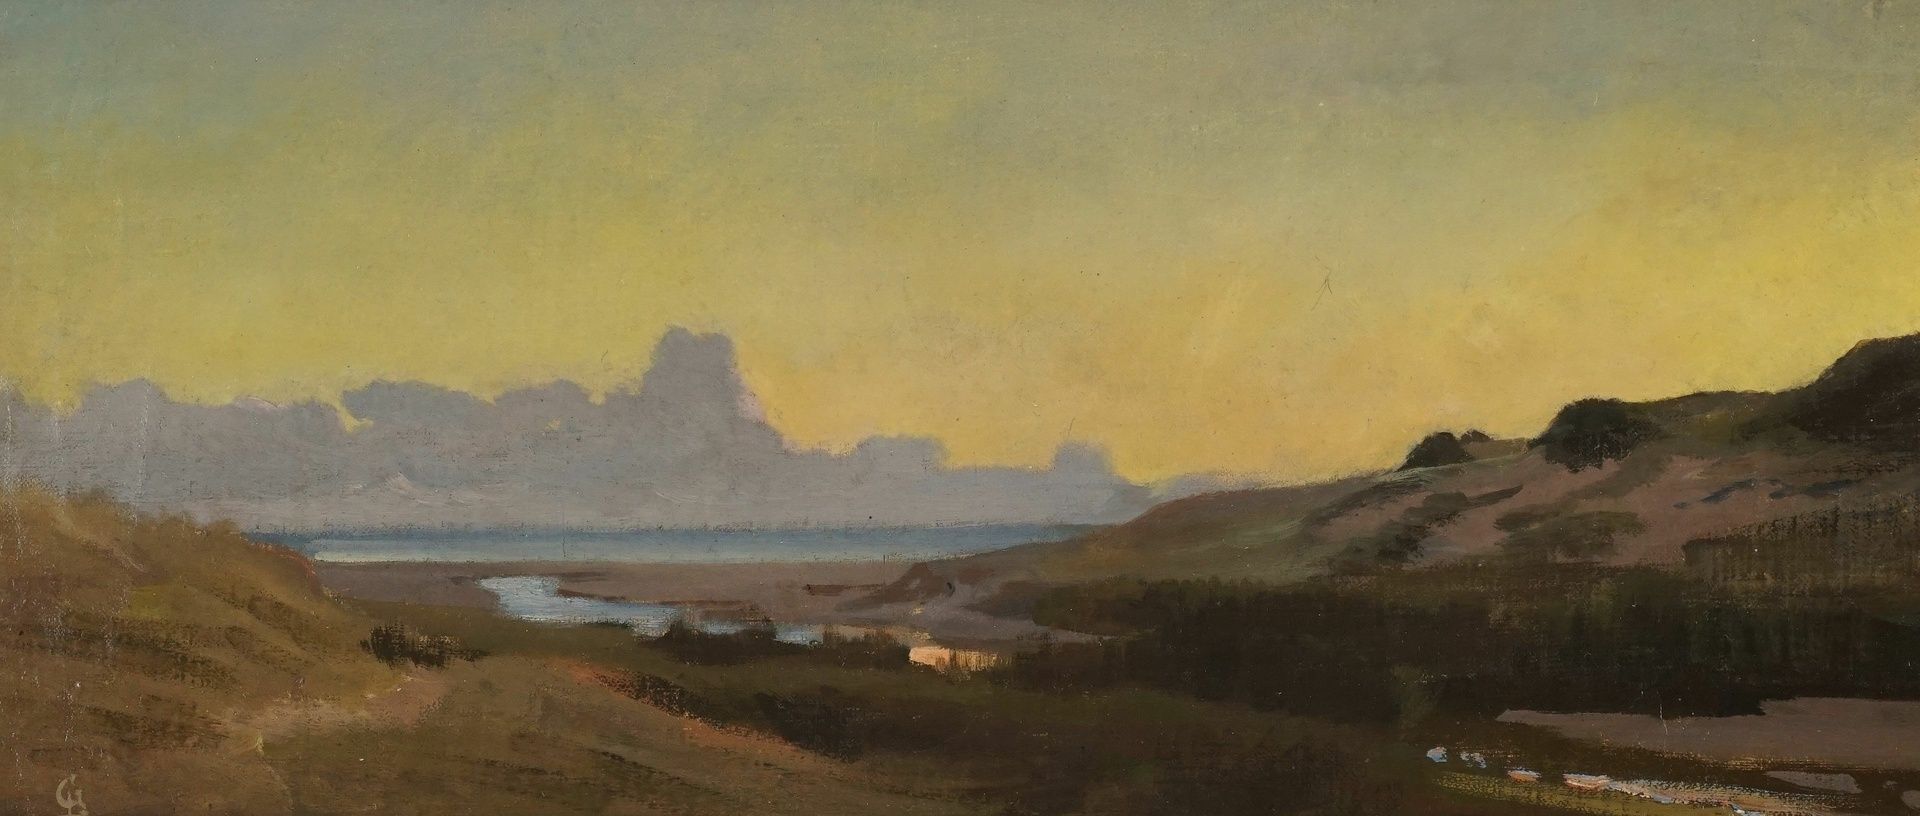 Louis (Heinrich Louis Theodor) Gurlitt, Dünenlandschaft an der Nordsee bei Sonnenaufgang